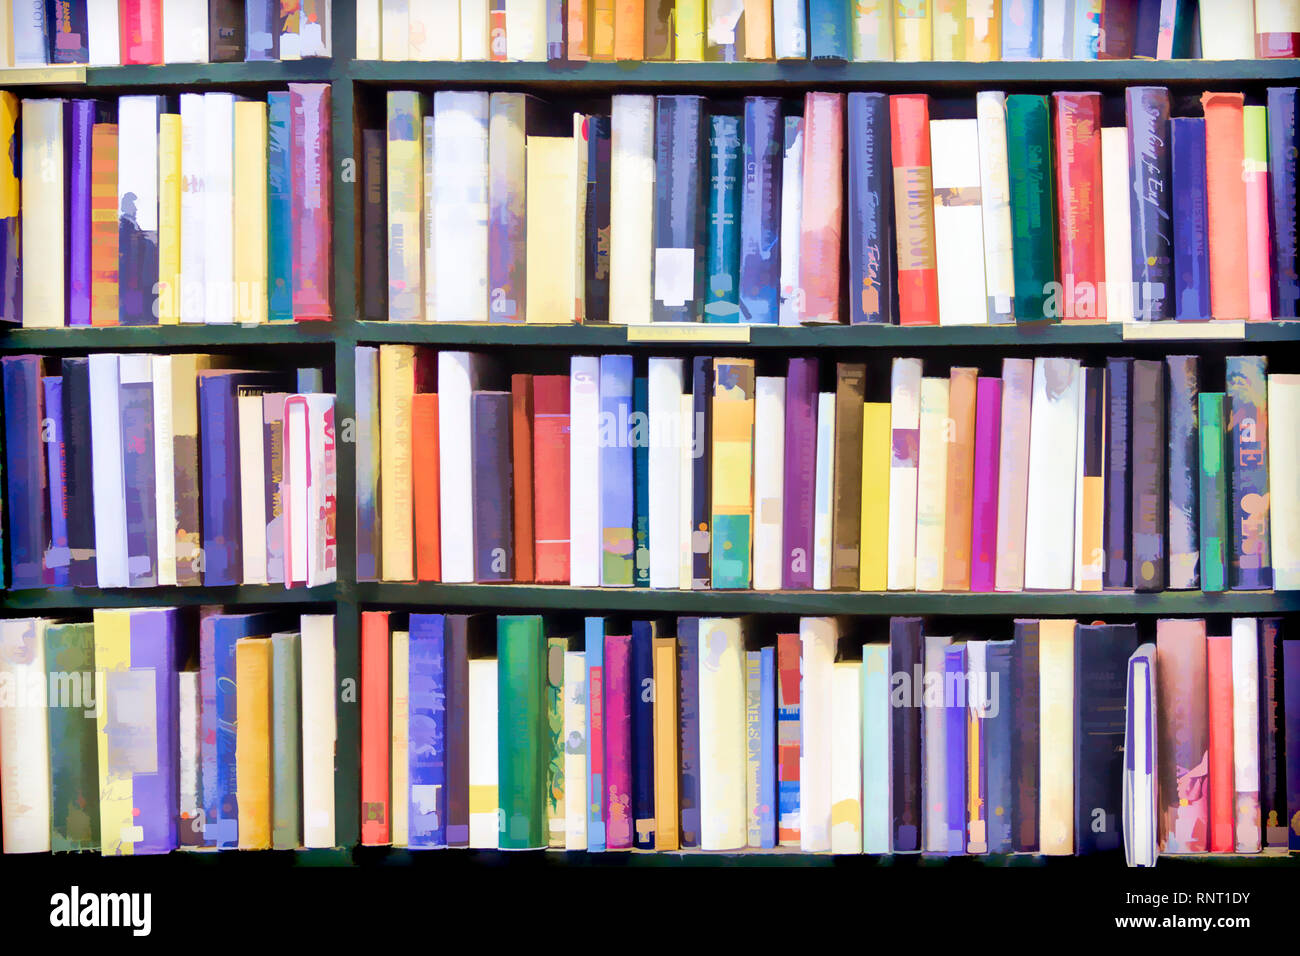 Abstrakte Malerei Bild von bunten Bücher fest auf eine Bibliothek Regal gestapelt, die Titel verdeckt Stockfoto